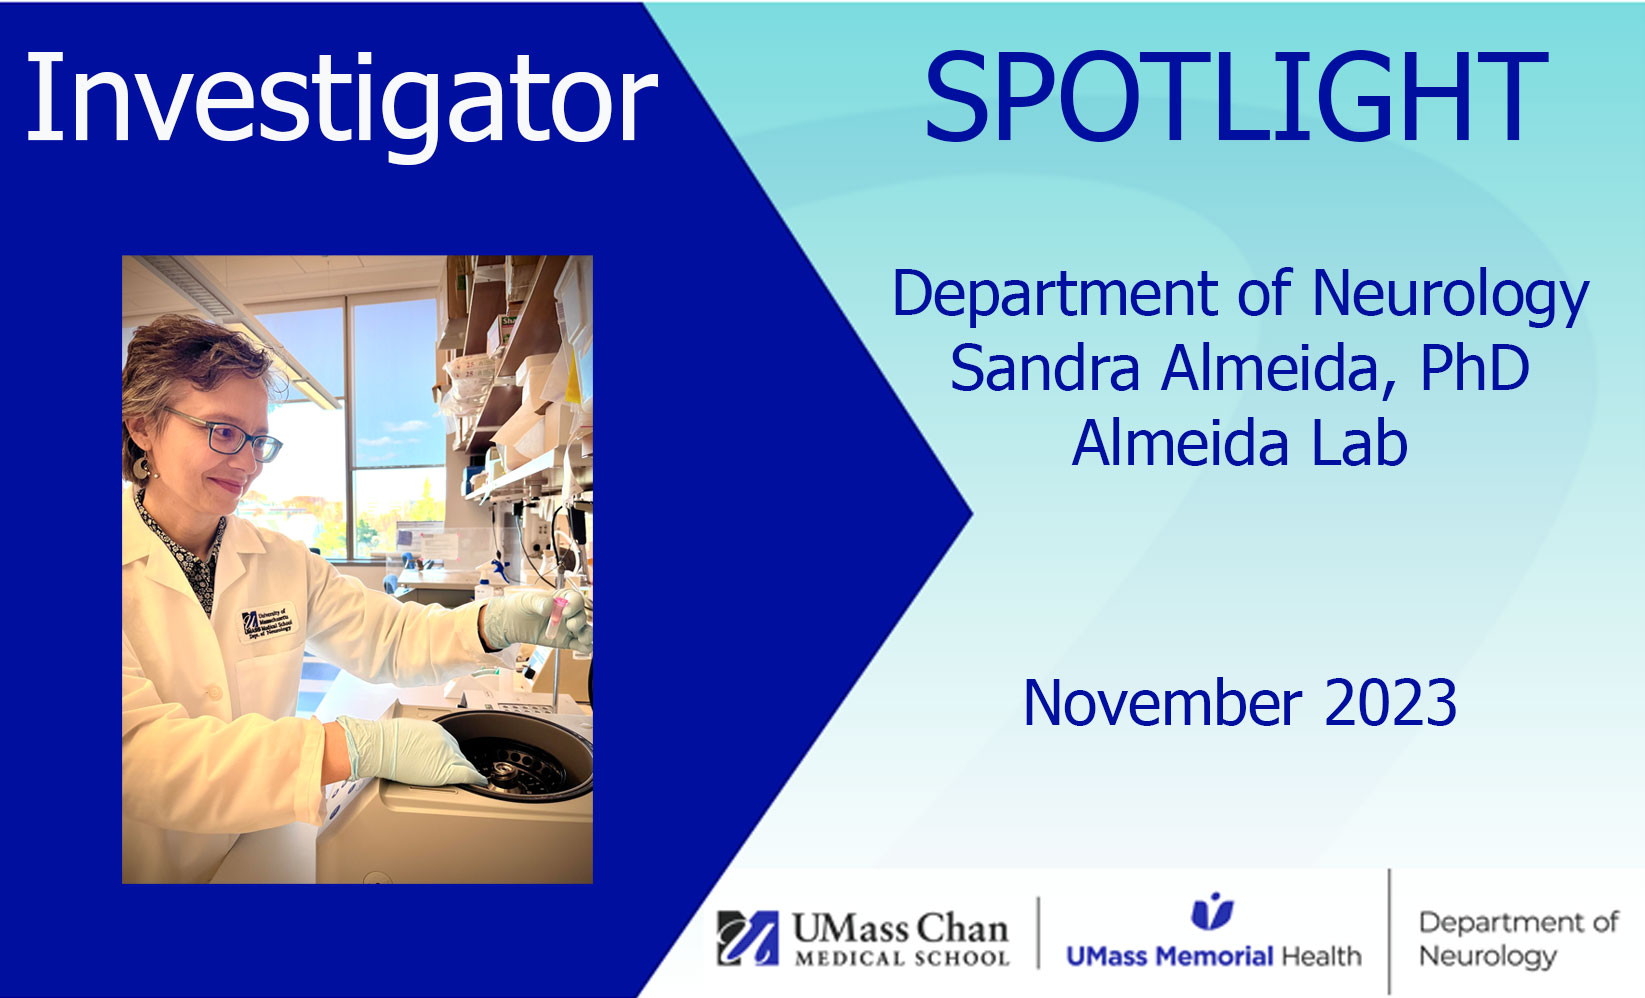 Sandra Almeida, PhD, Investigator Spotlight for Almeida Lab, November 2023